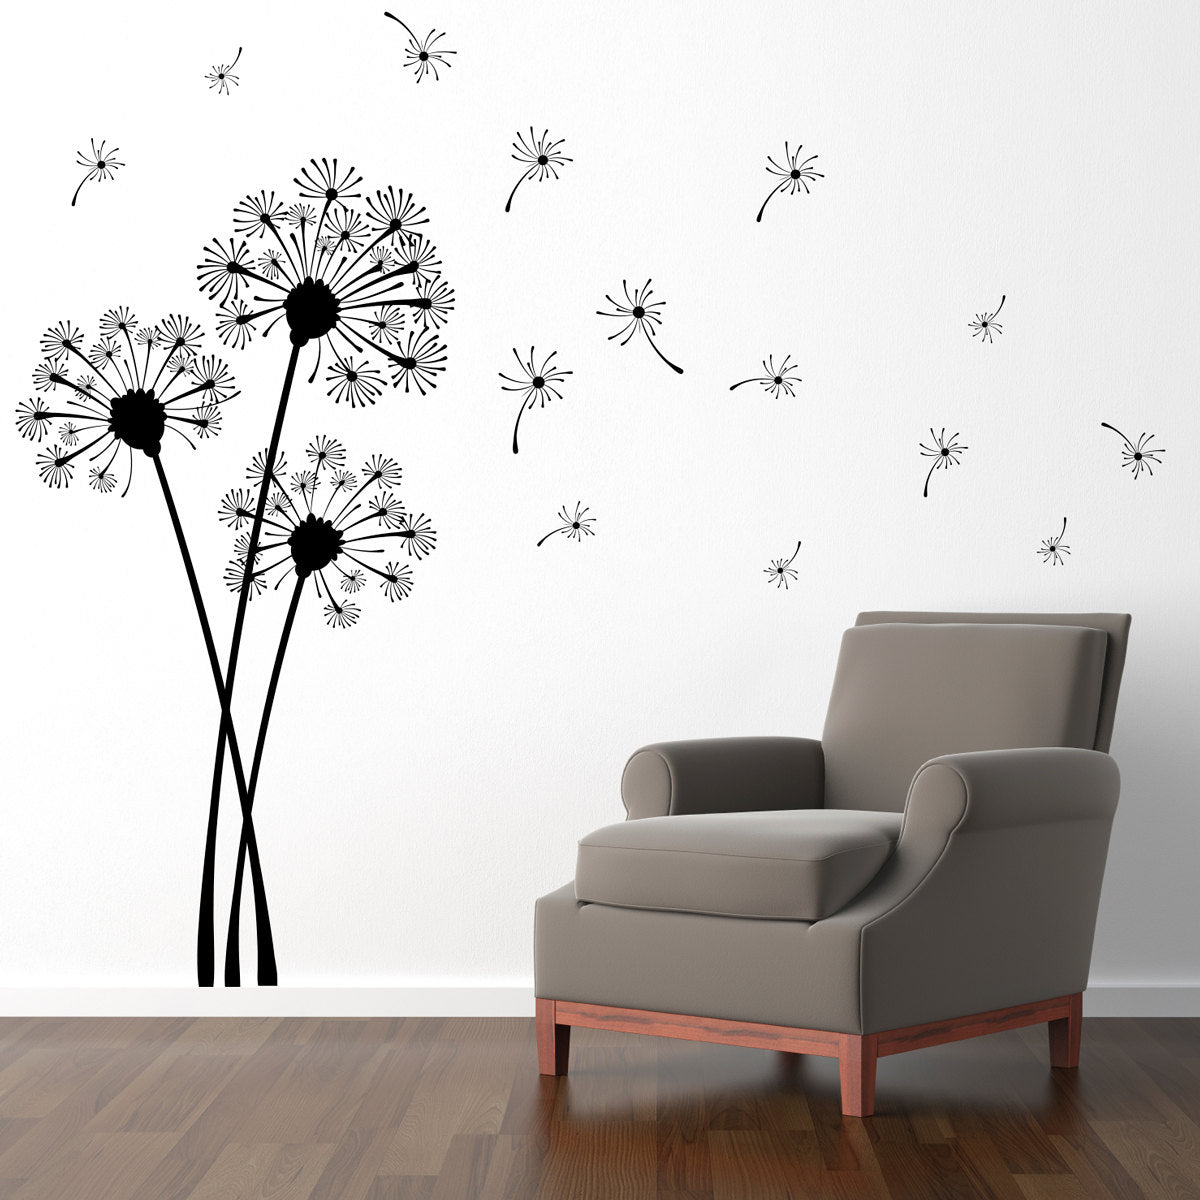 Dandelion Wall Decal - Flower Decor - Dandelion Wall Sticker